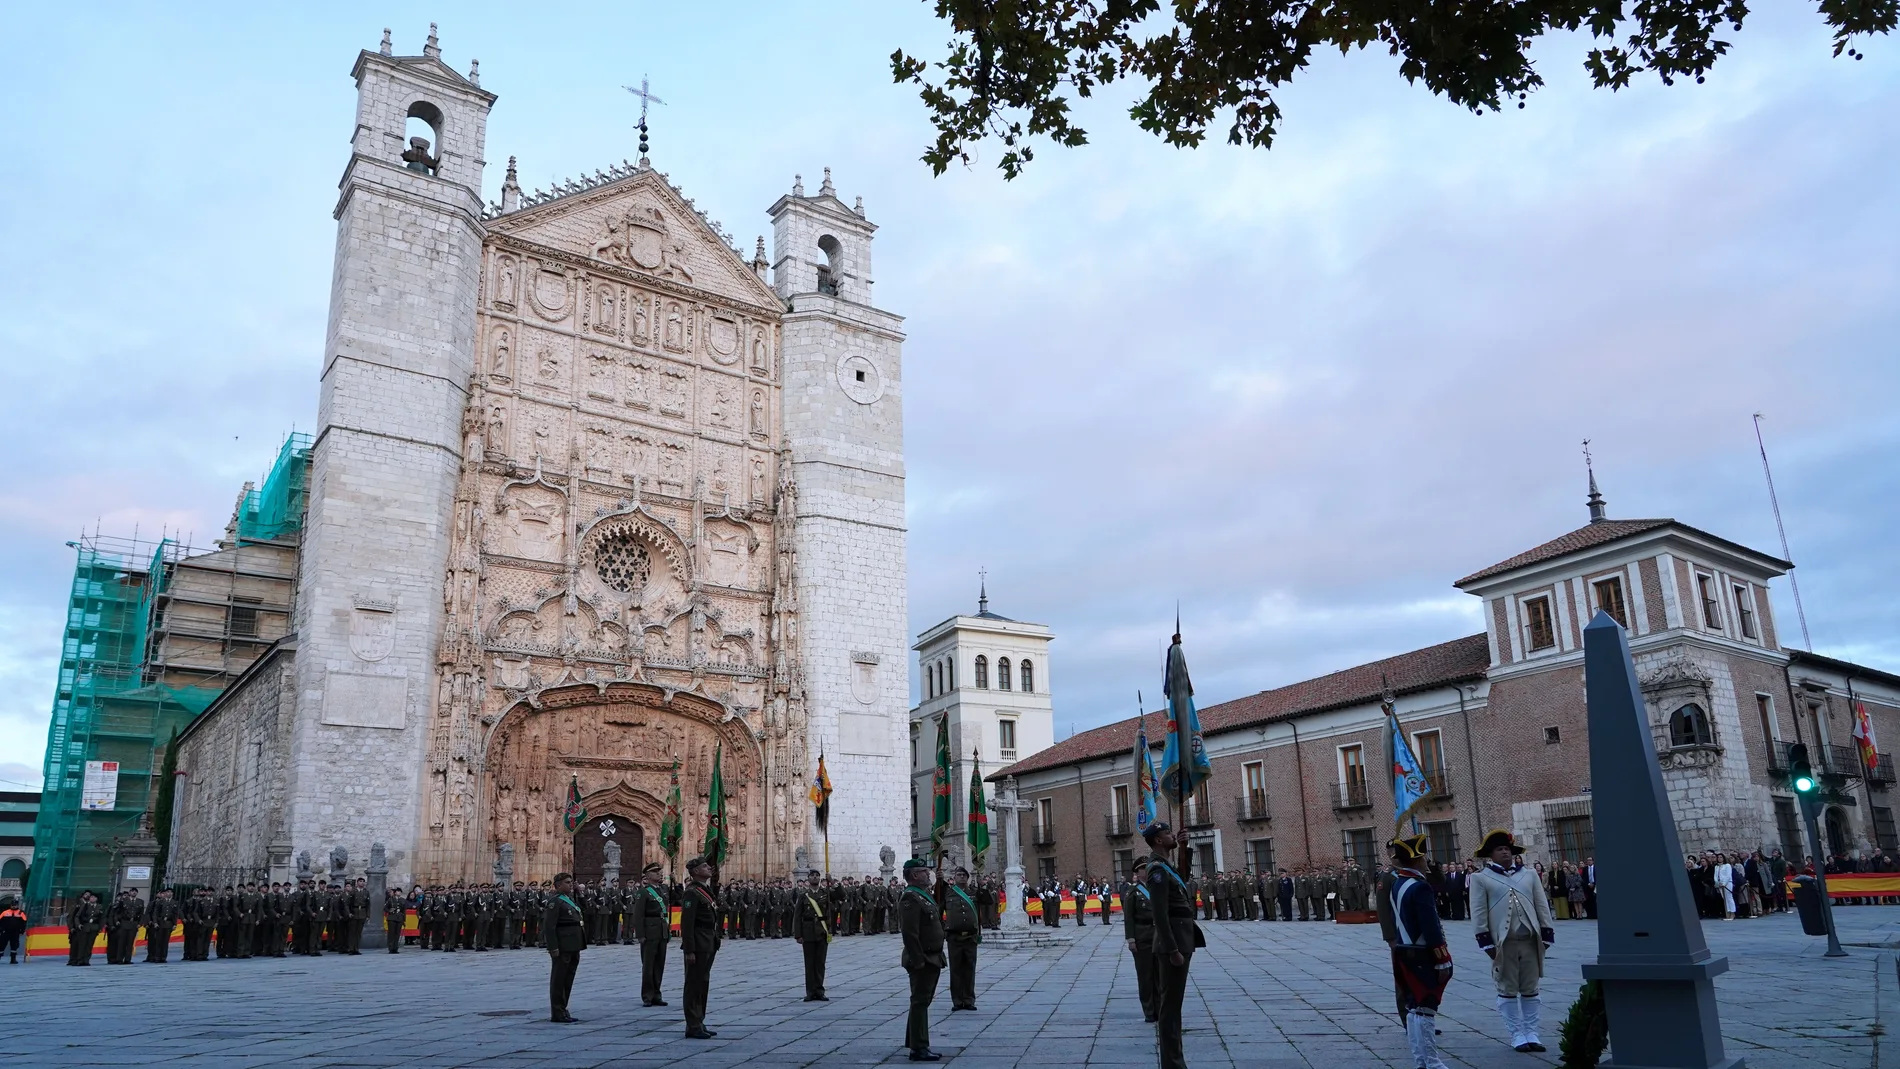 Homenaje a los que dieron su vida por España junto al Palacio Real de Valladolid, con la imponente iglesia de San Pablo al fondo